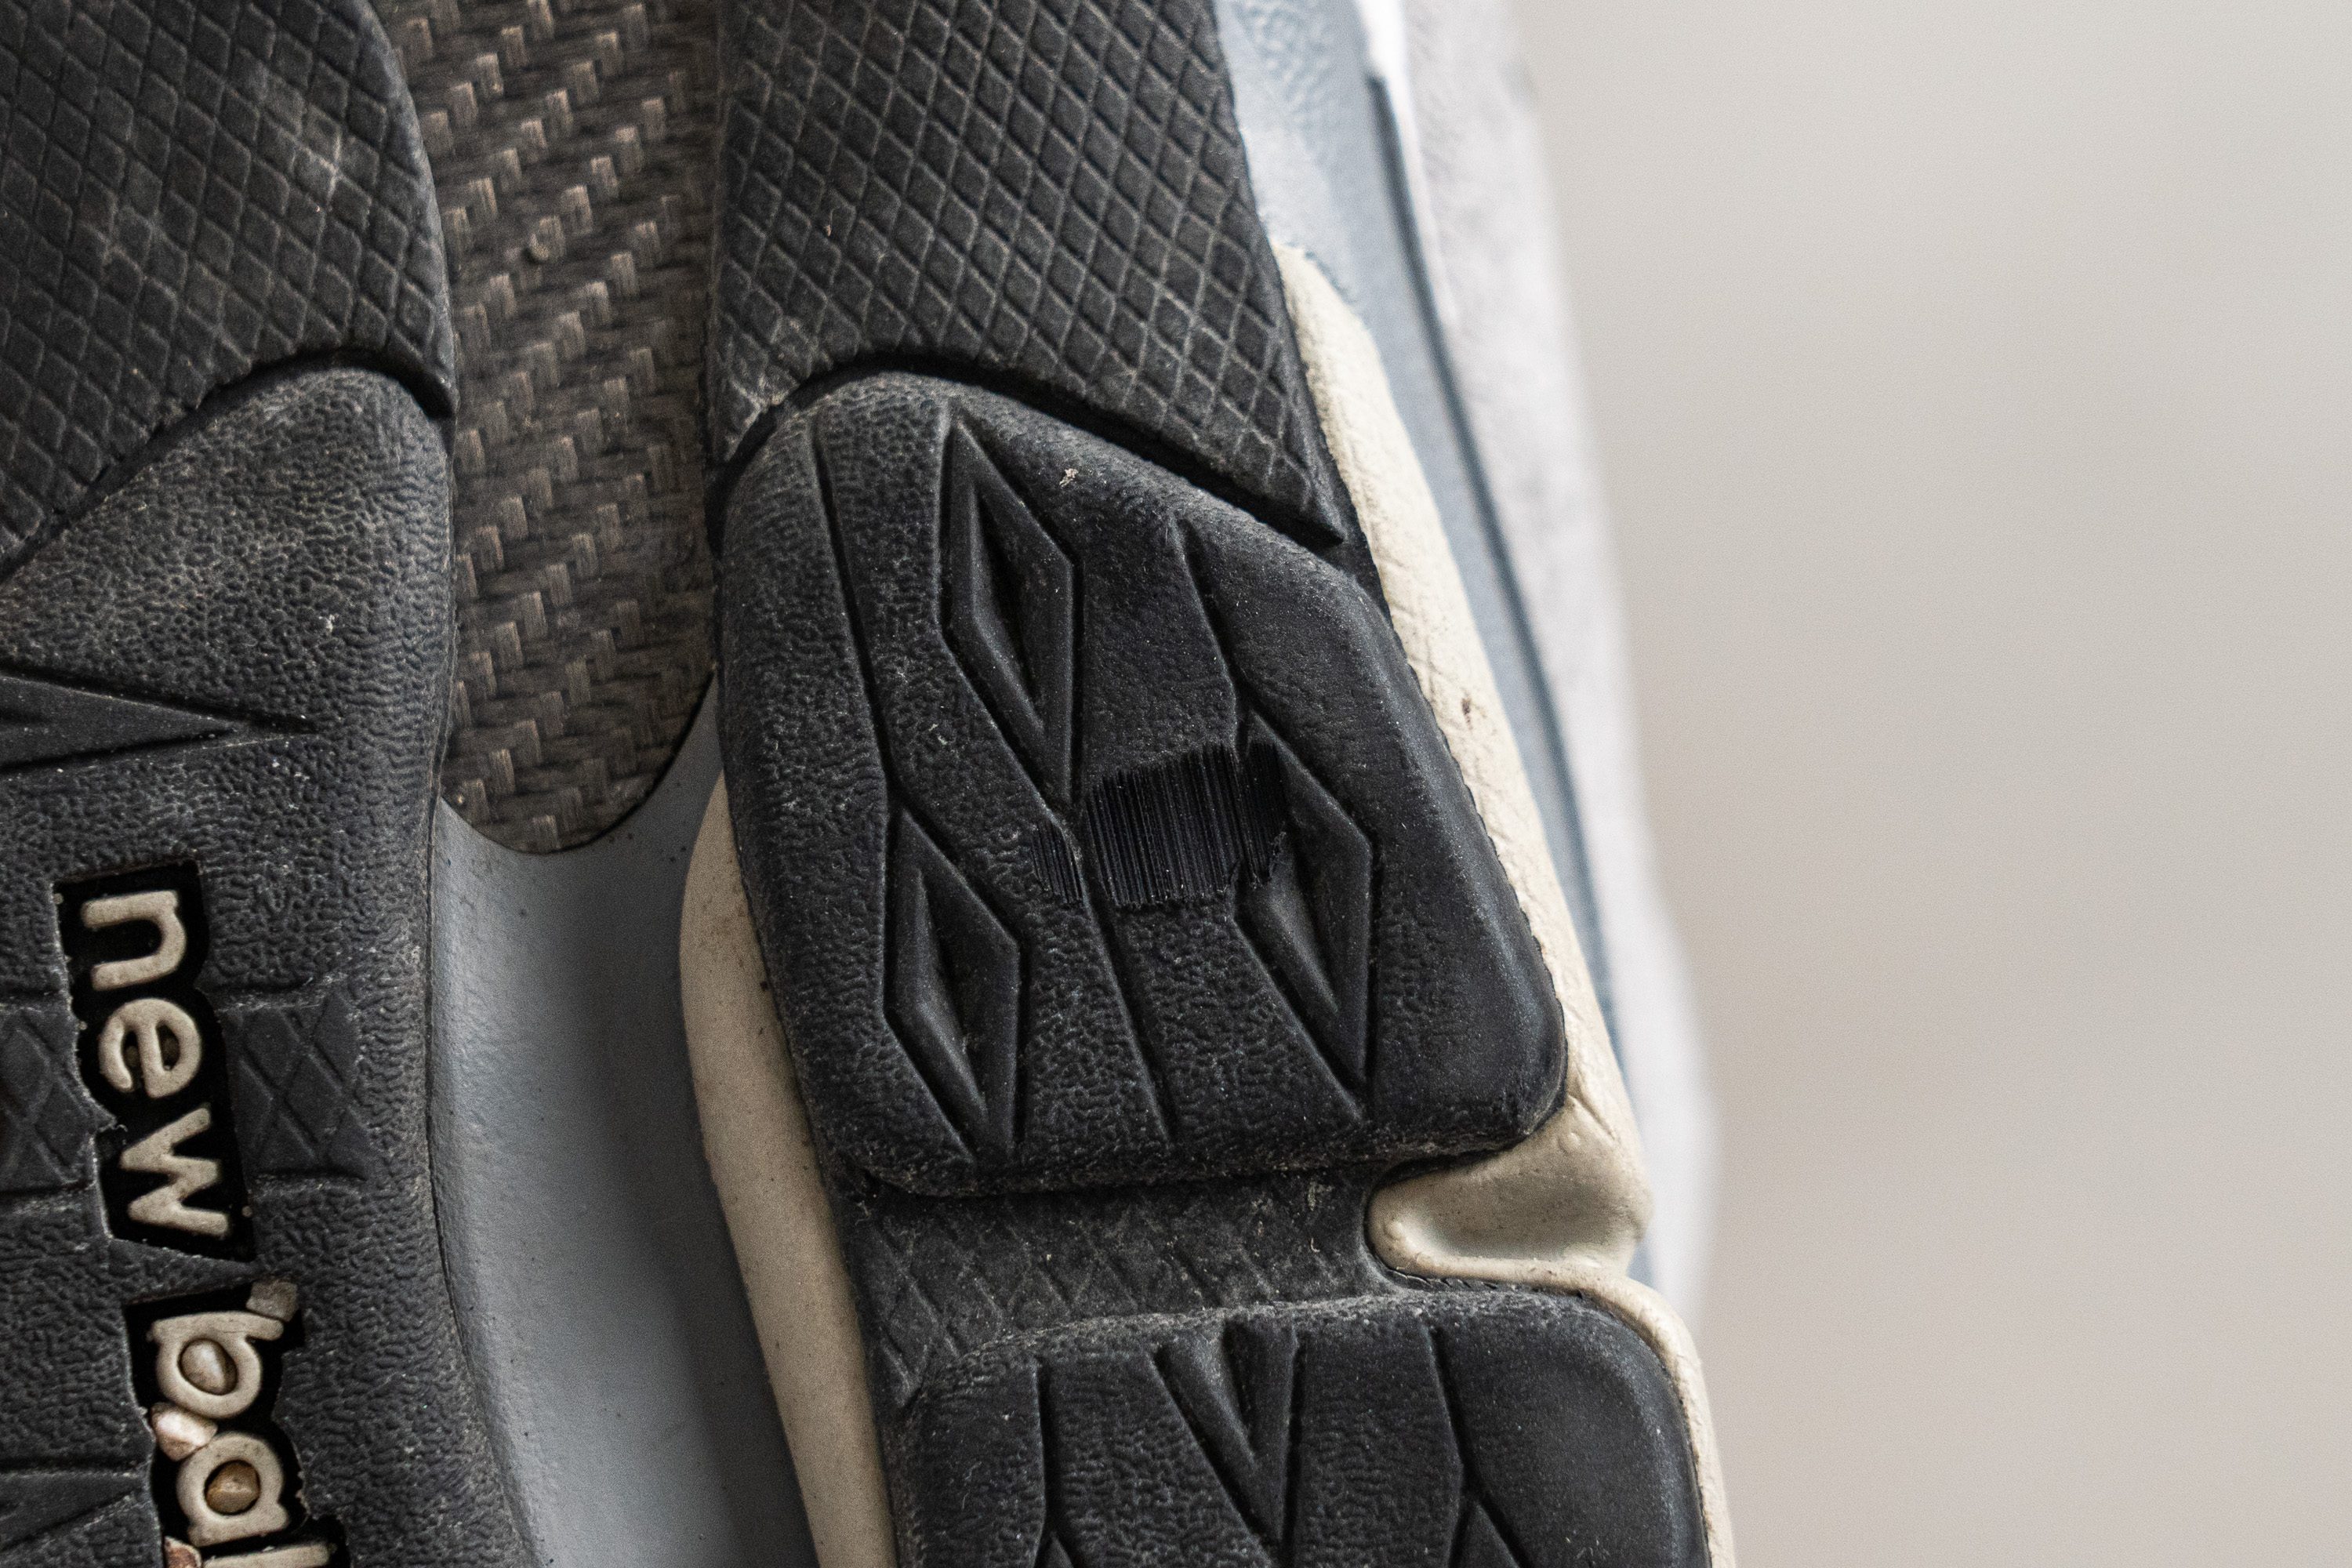 zapatillas de running New Balance mujer asfalto talla 37.5 baratas menos de 60 Outsole durability